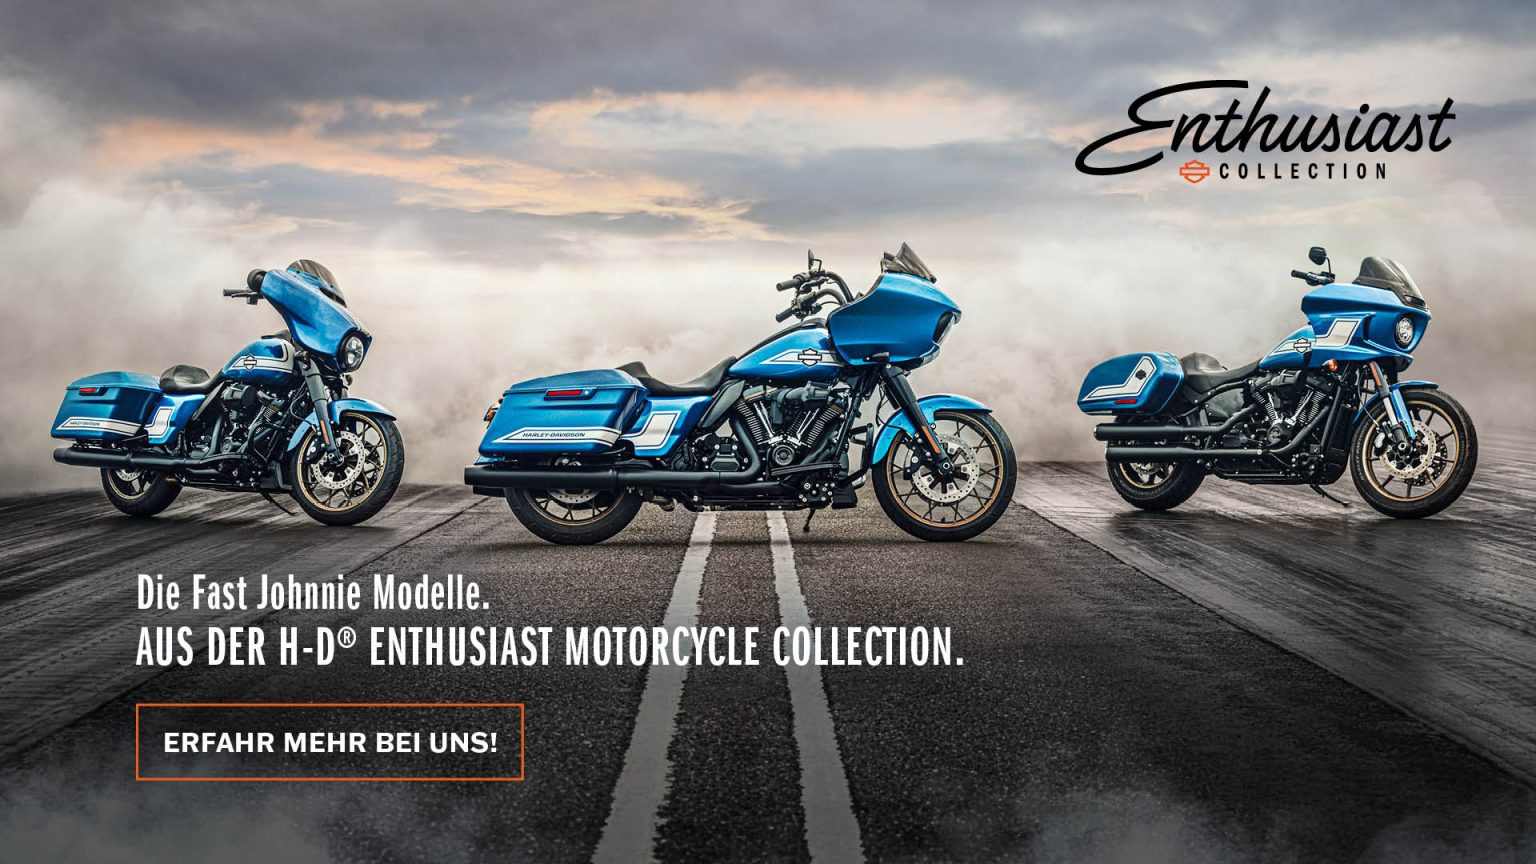 Die Fast Johnnie Modelle der Enthusiast Motorcycle Collection sind da